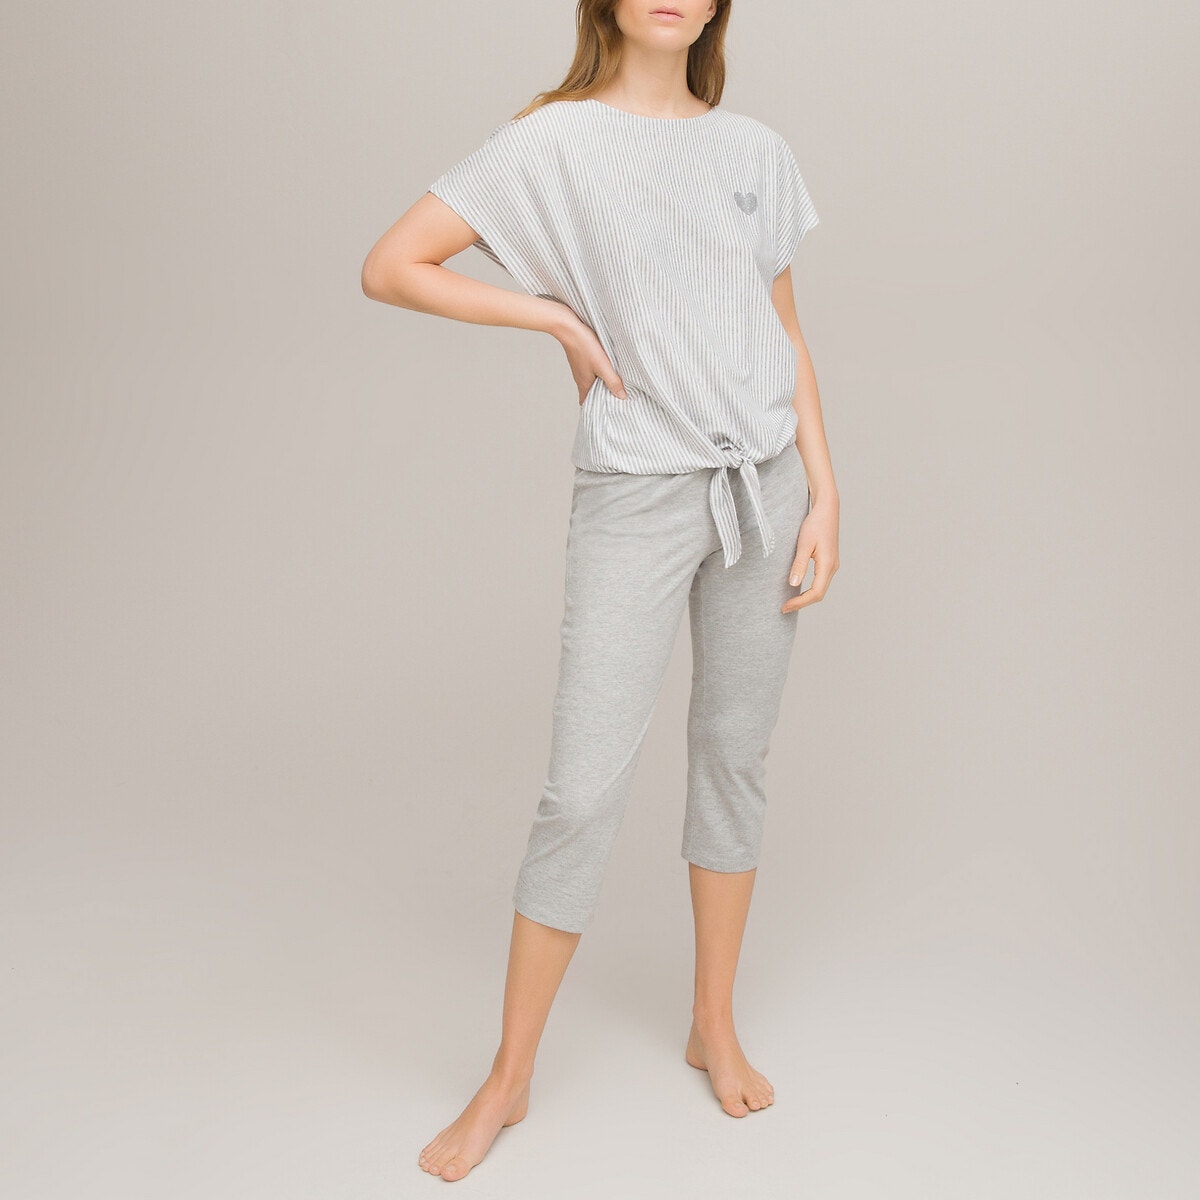 ΓΥΝΑΙΚΑ | Σύνολα ύπνου | Πυτζάμες Πιτζάμα με κάπρι και μπλούζα που δένει στη βάση